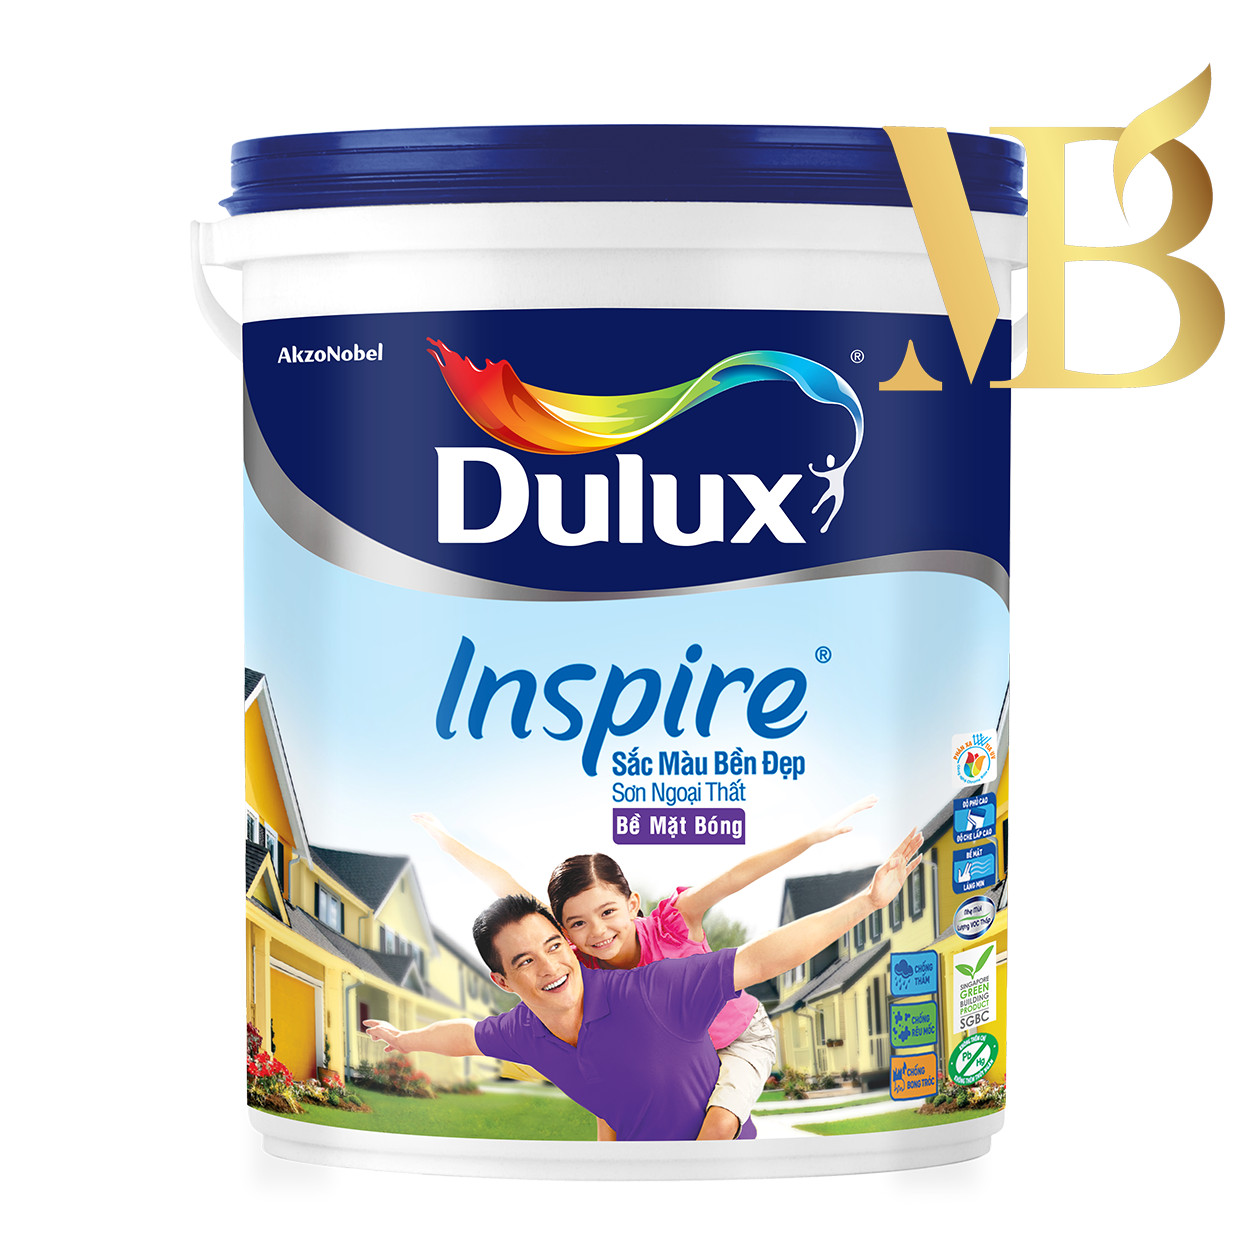 Dulux Inspire 79AB Ngoại Thất Bề Mặt Bóng 5L